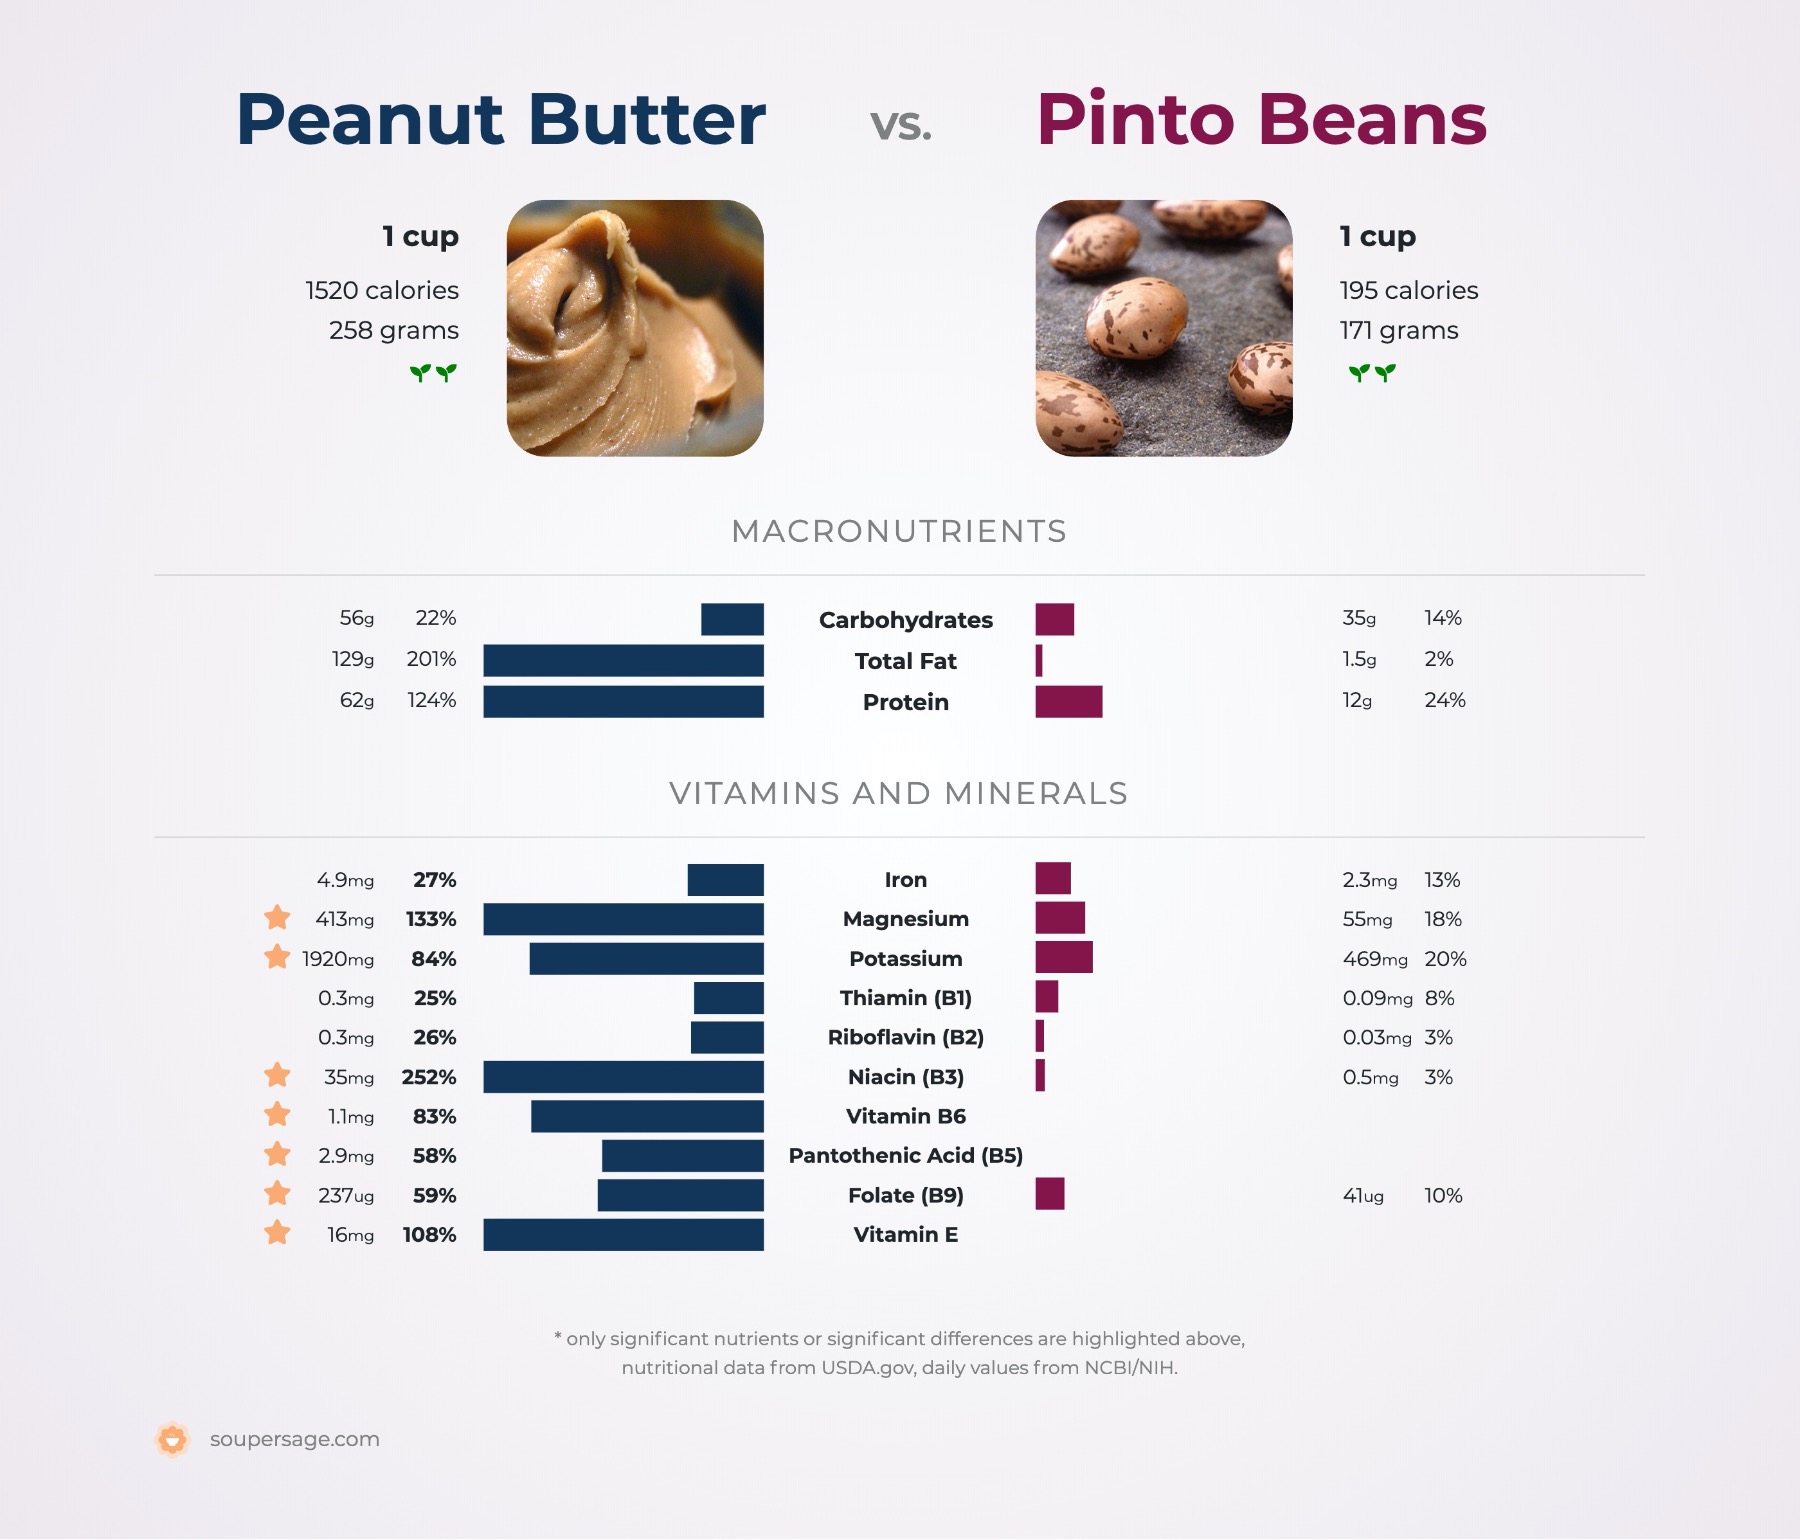 nutrition comparison of peanut butter vs. pinto beans